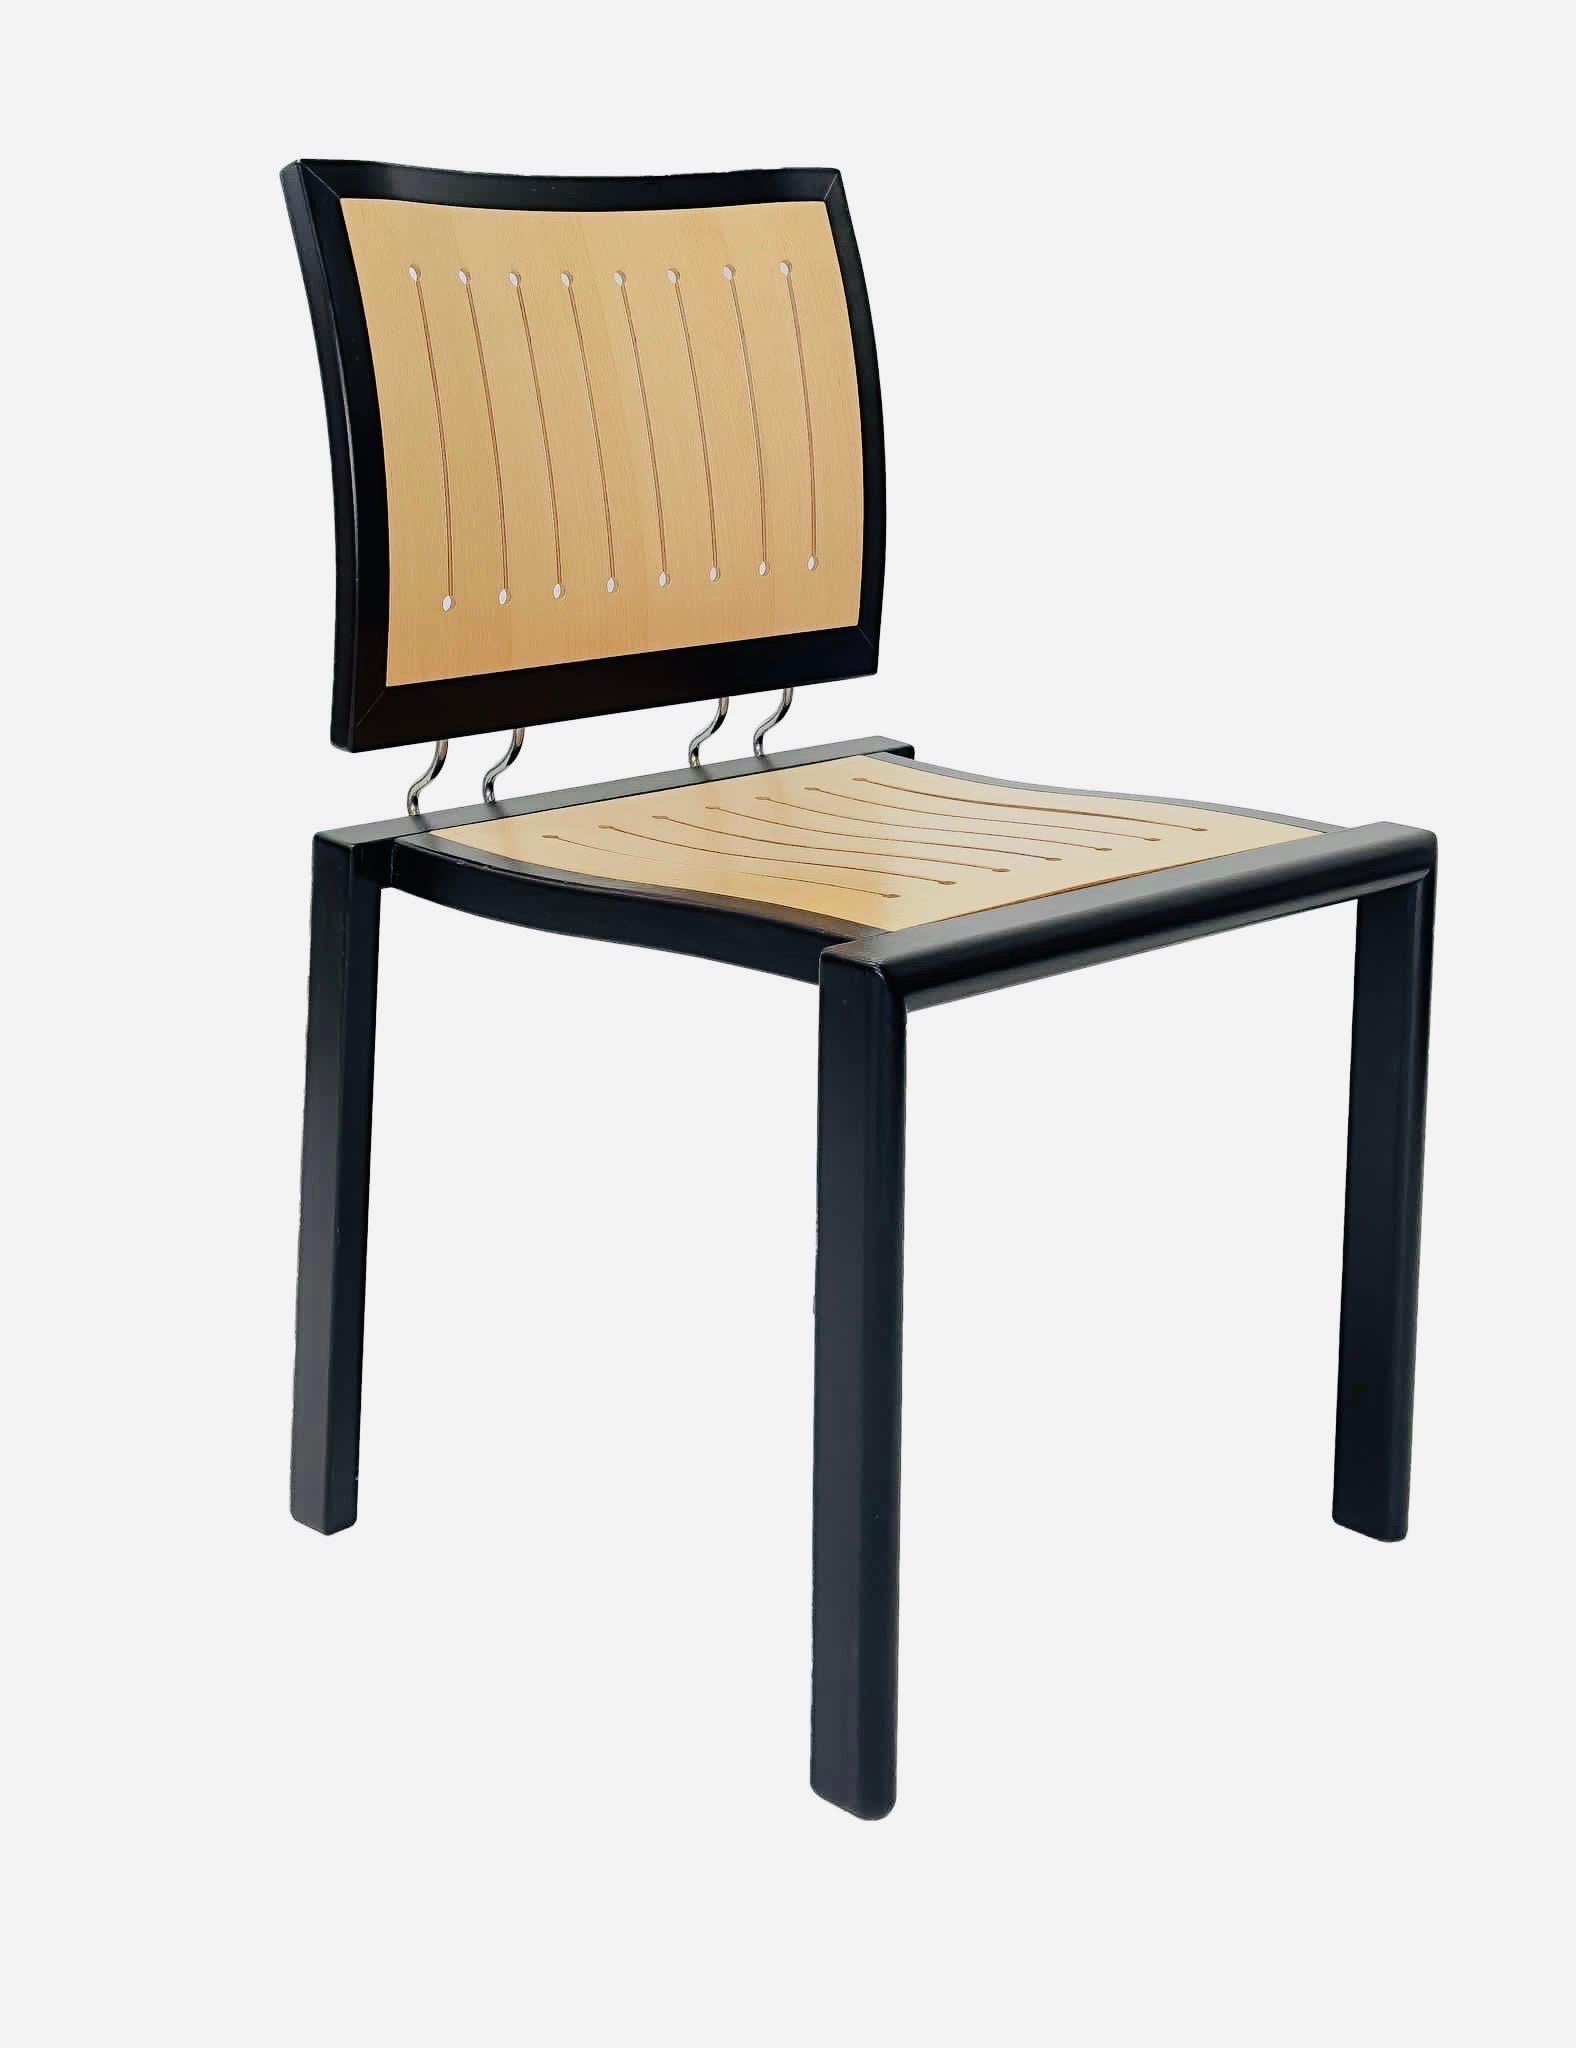 Conçue en 1989 par le designer suisse le plus renommé, Bruno Rey, en collaboration avec Charles Polin, cette chaise classique doit sa caractéristique intemporelle à ses lignes carrées, à son dossier finement ciselé et à sa liaison fine entre le